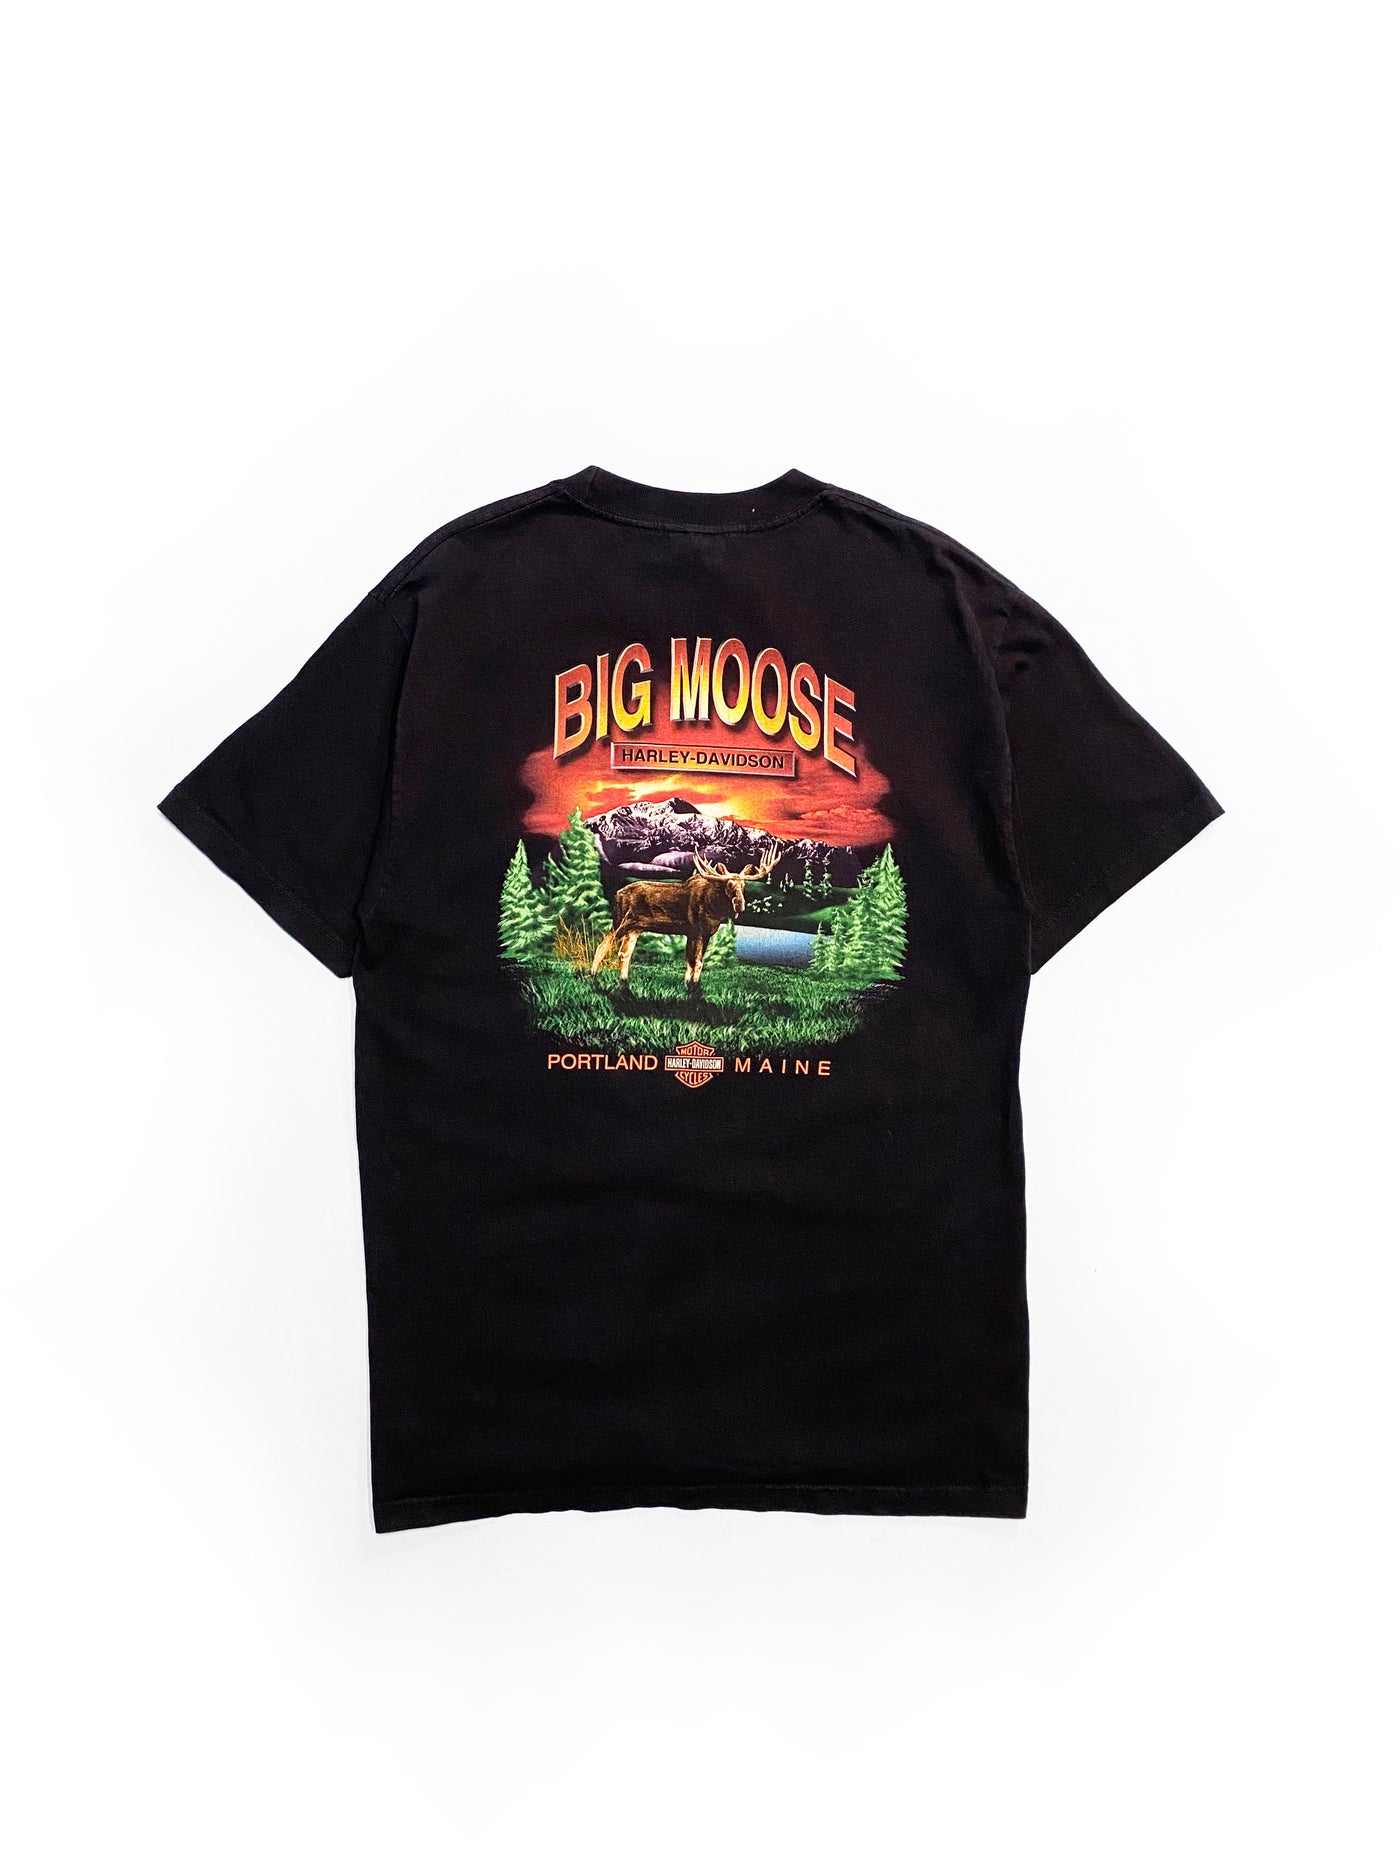 Vintage 2000 Big Moose Harley Davidson T-Shirt